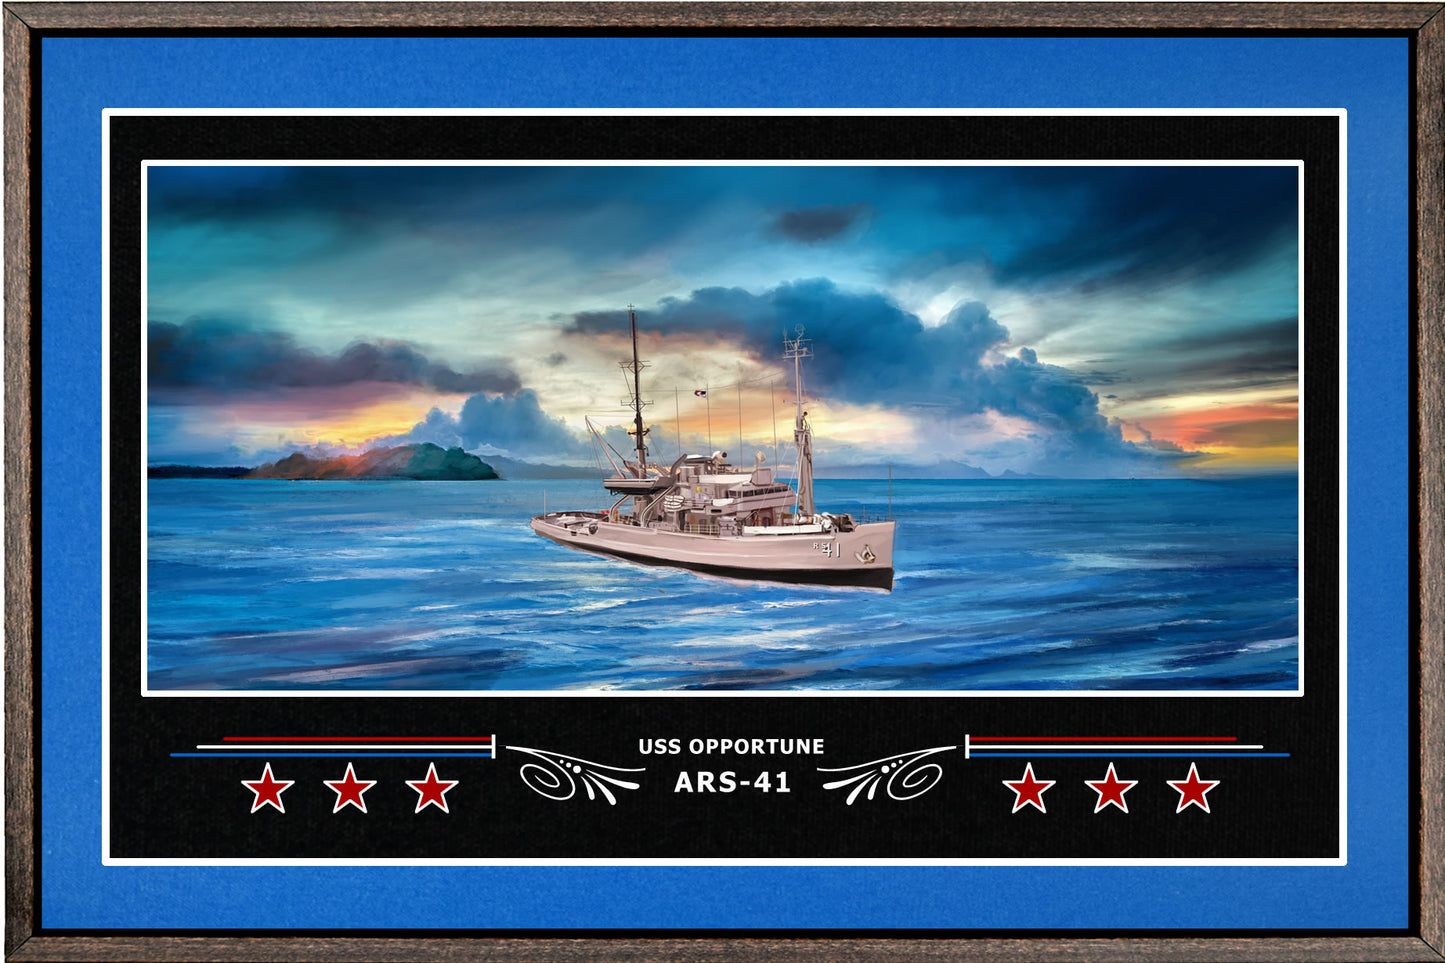 USS OPPORTUNE ARS 41 BOX FRAMED CANVAS ART BLUE